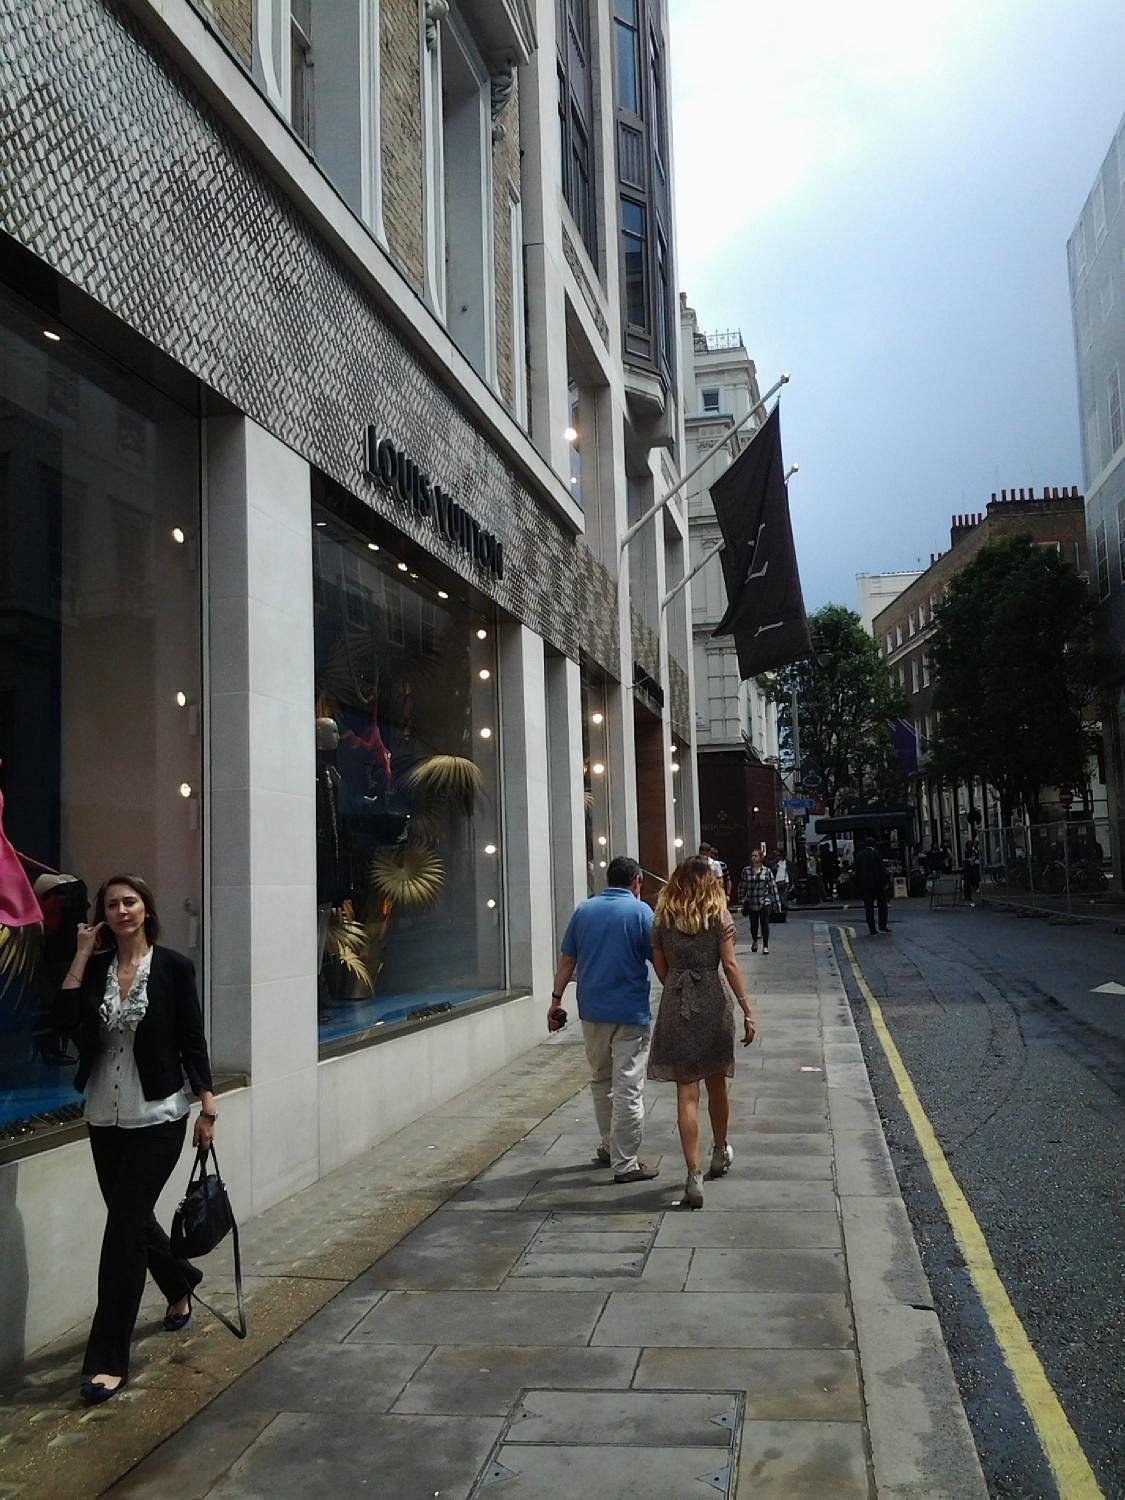 Por qué los bolsos de Louis Vuitton son más baratos en Londres?